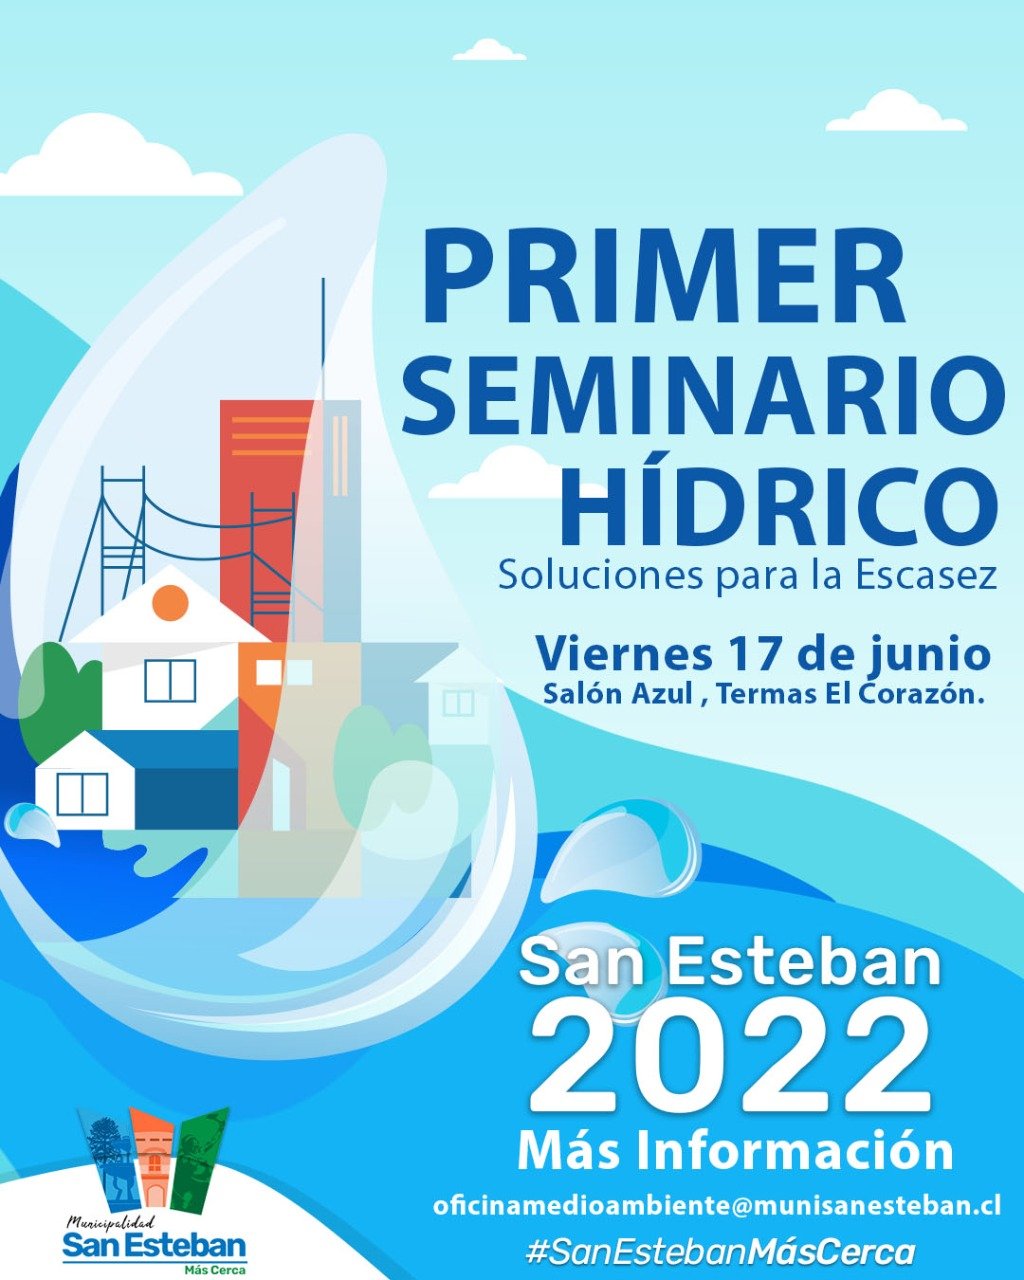 SAN ESTEBAN:  Municipio de San Esteban desarrollará su primer seminario “soluciones para la escasez” que orientará sobre nuevas normativas y uso consciente del recurso hídrico